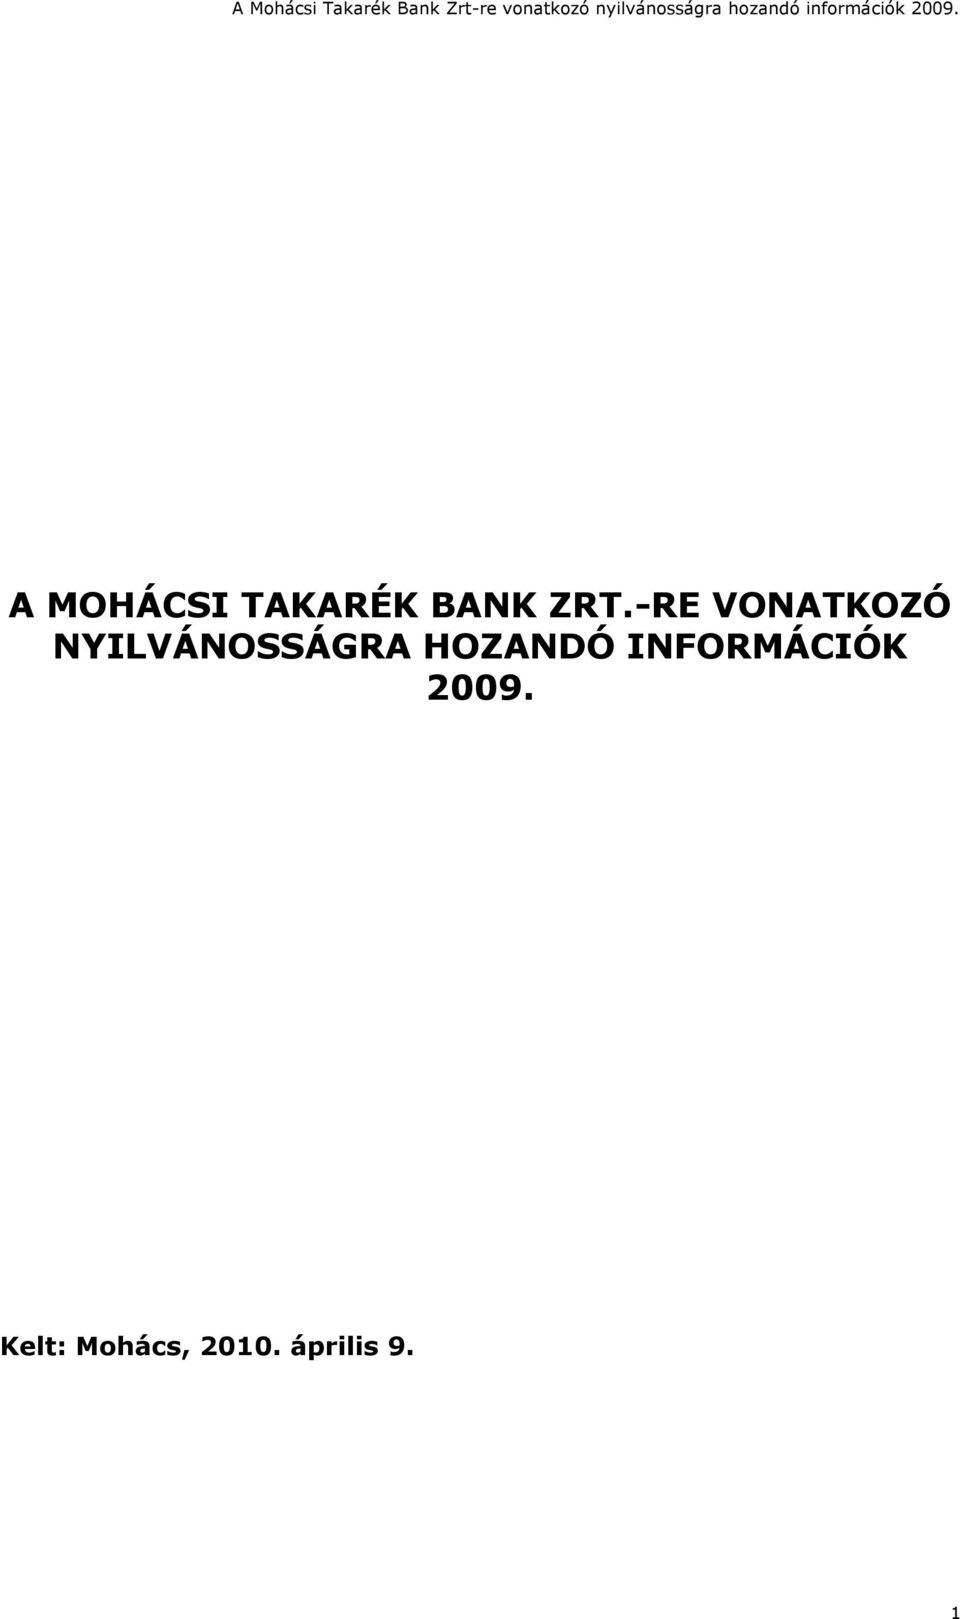 HOZANDÓ INFORMÁCIÓK 2009.